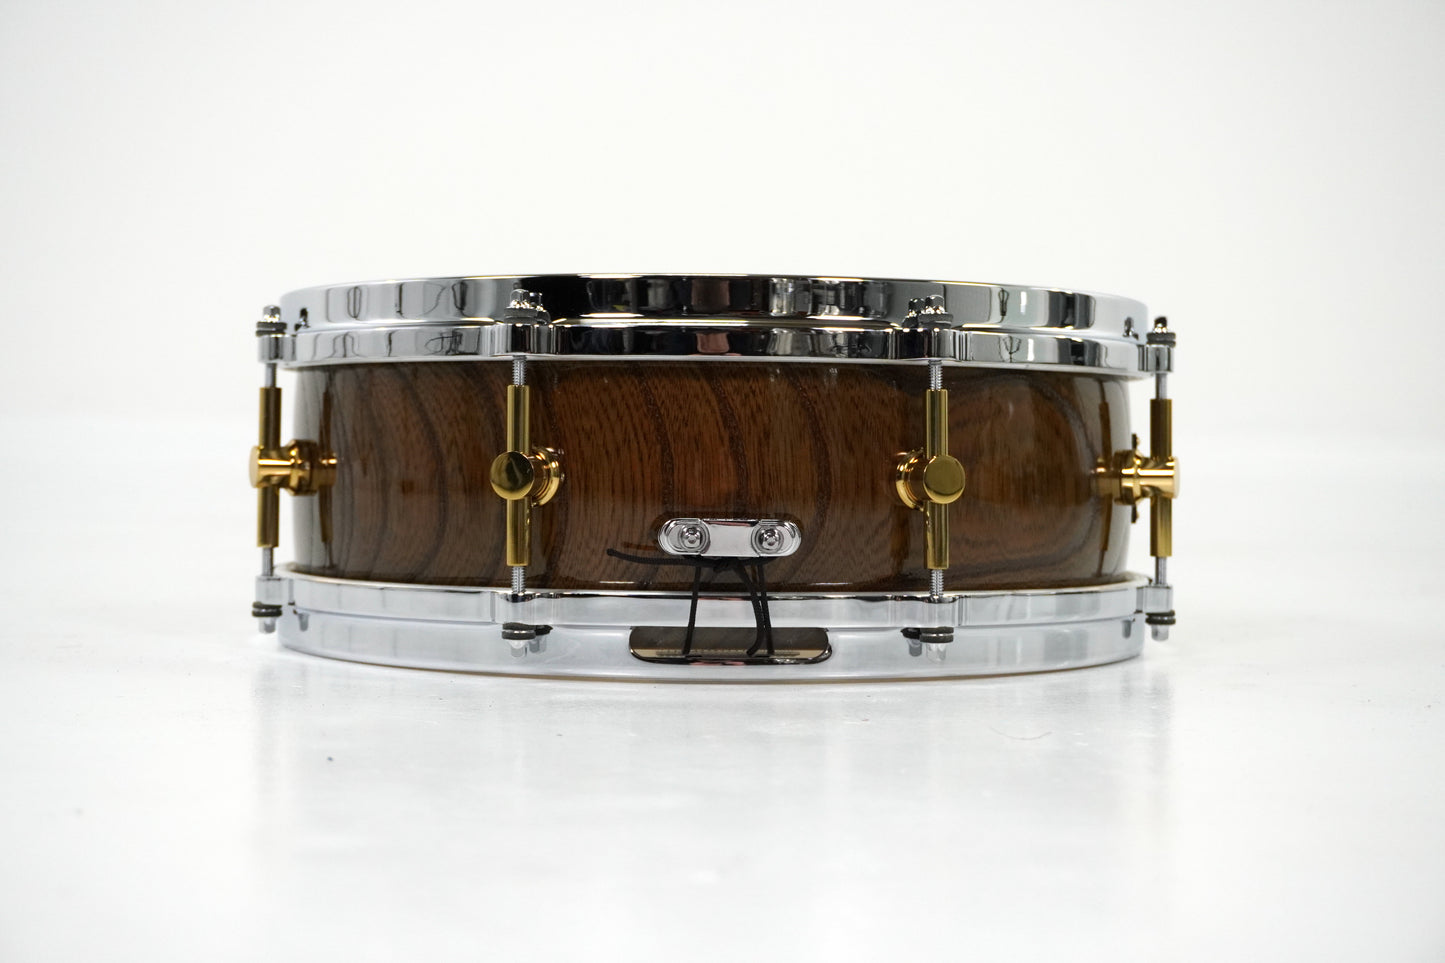 Canopus 14 x 5” Zelkova Snare Drum